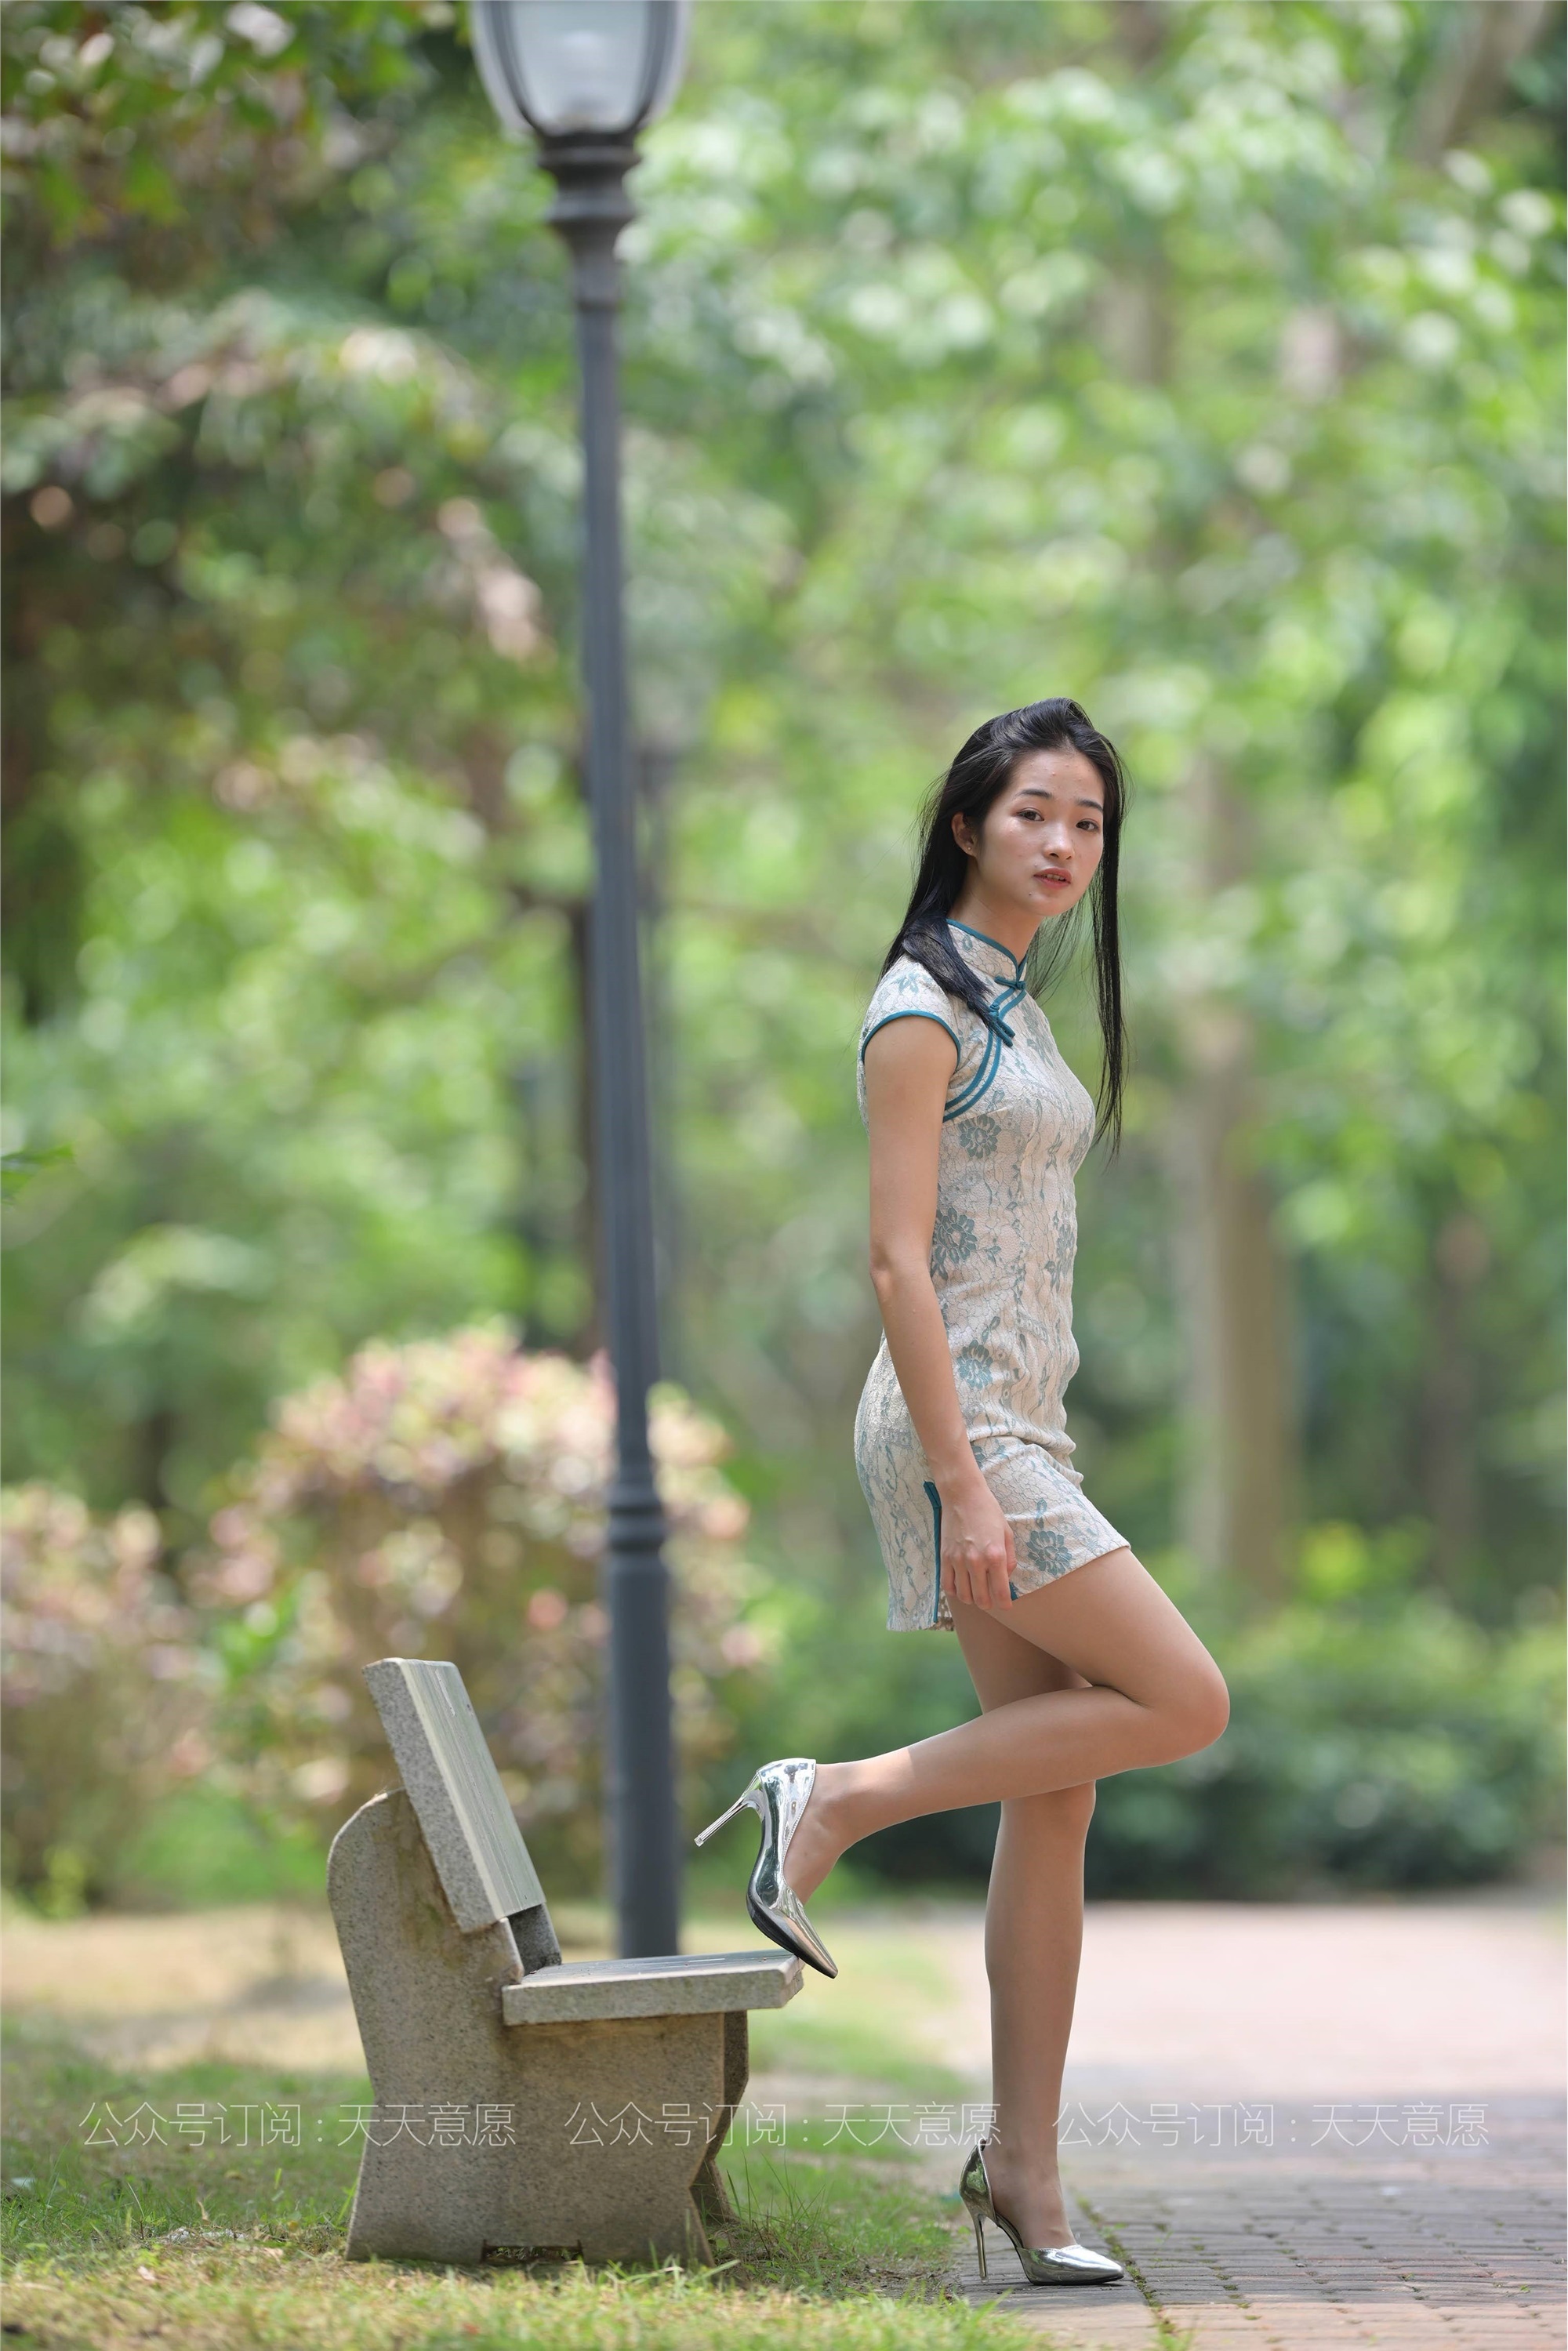 Model: Ning Ning, Green Shade Cheongsam Show